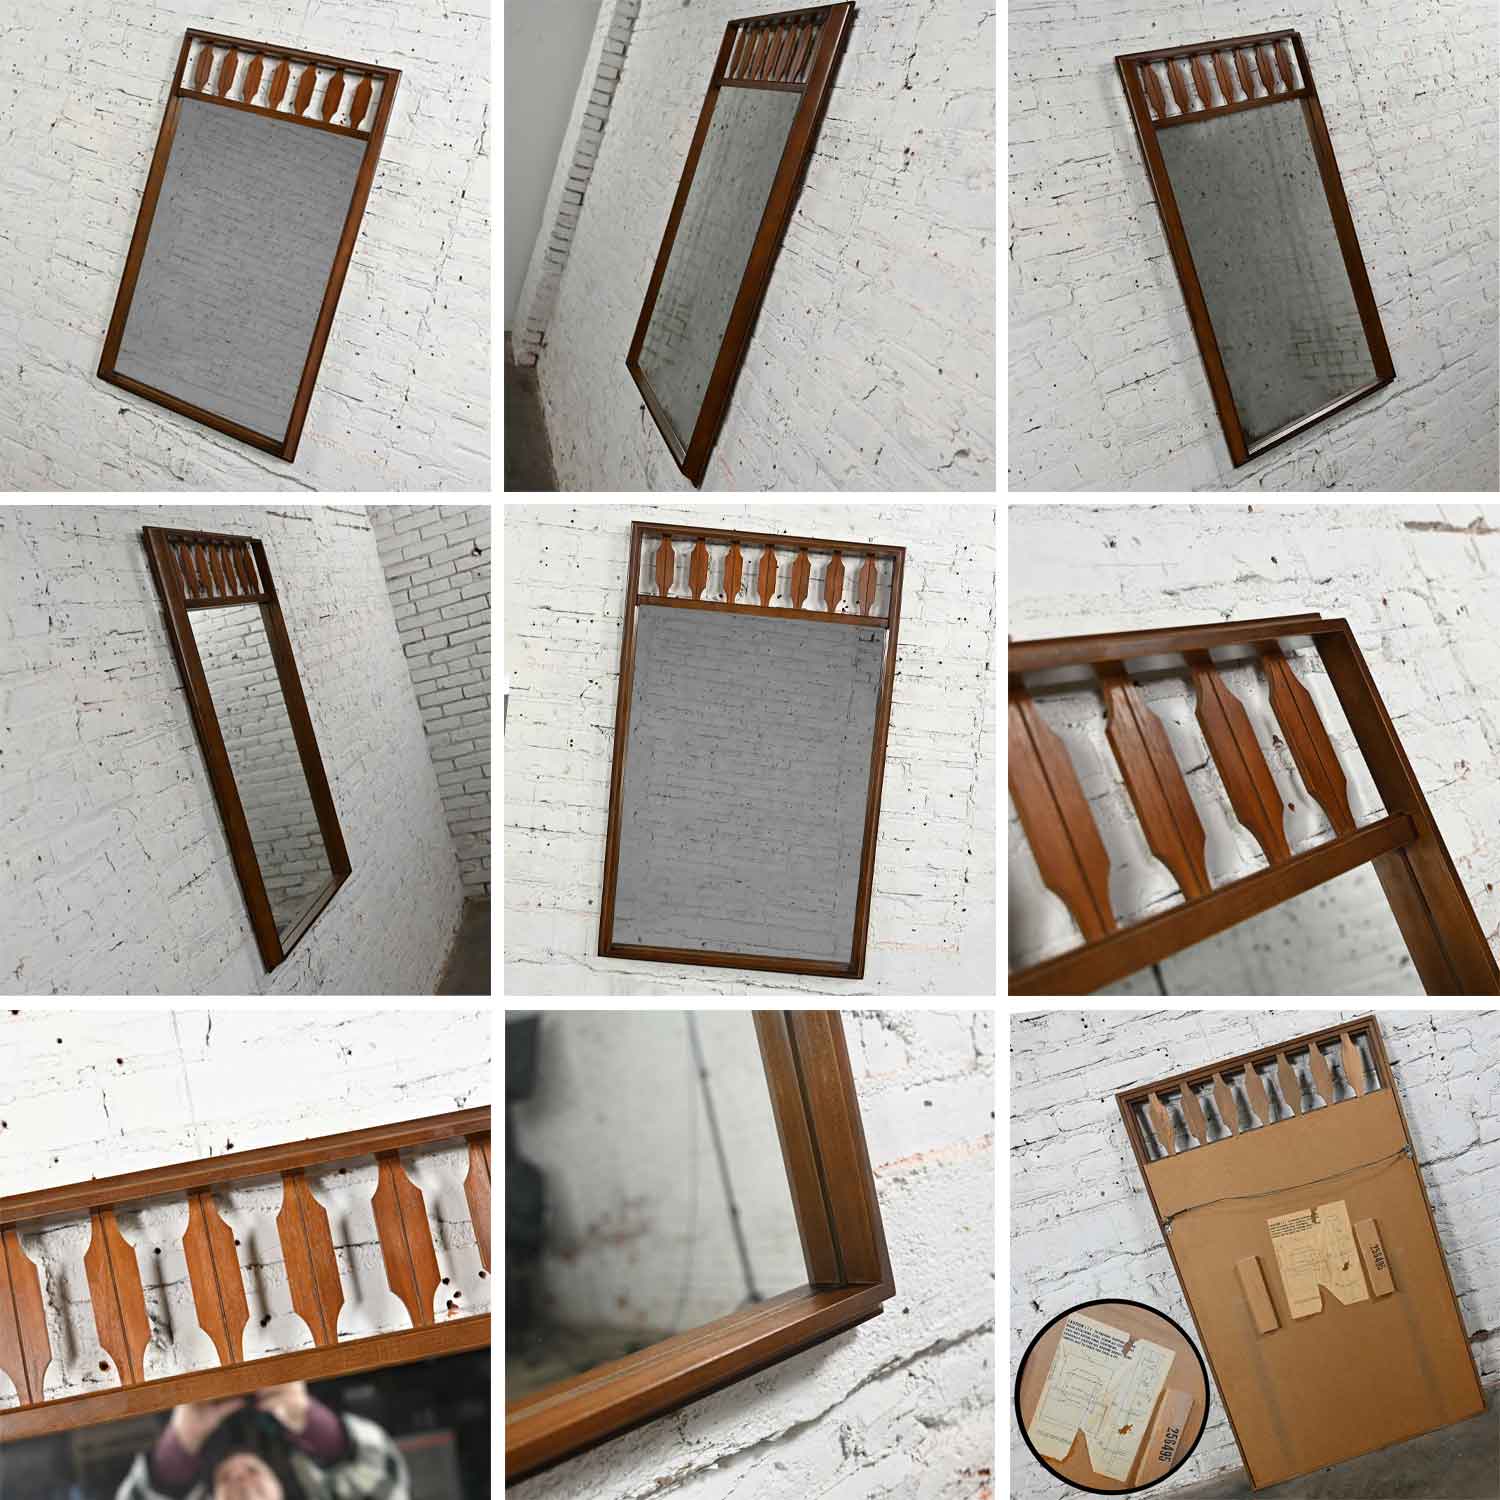 Vintage Mid Century Modern Johnson Carper Fashion Trend 4 Piece Walnut Bedroom Set Dresser Mirror & Nightstands